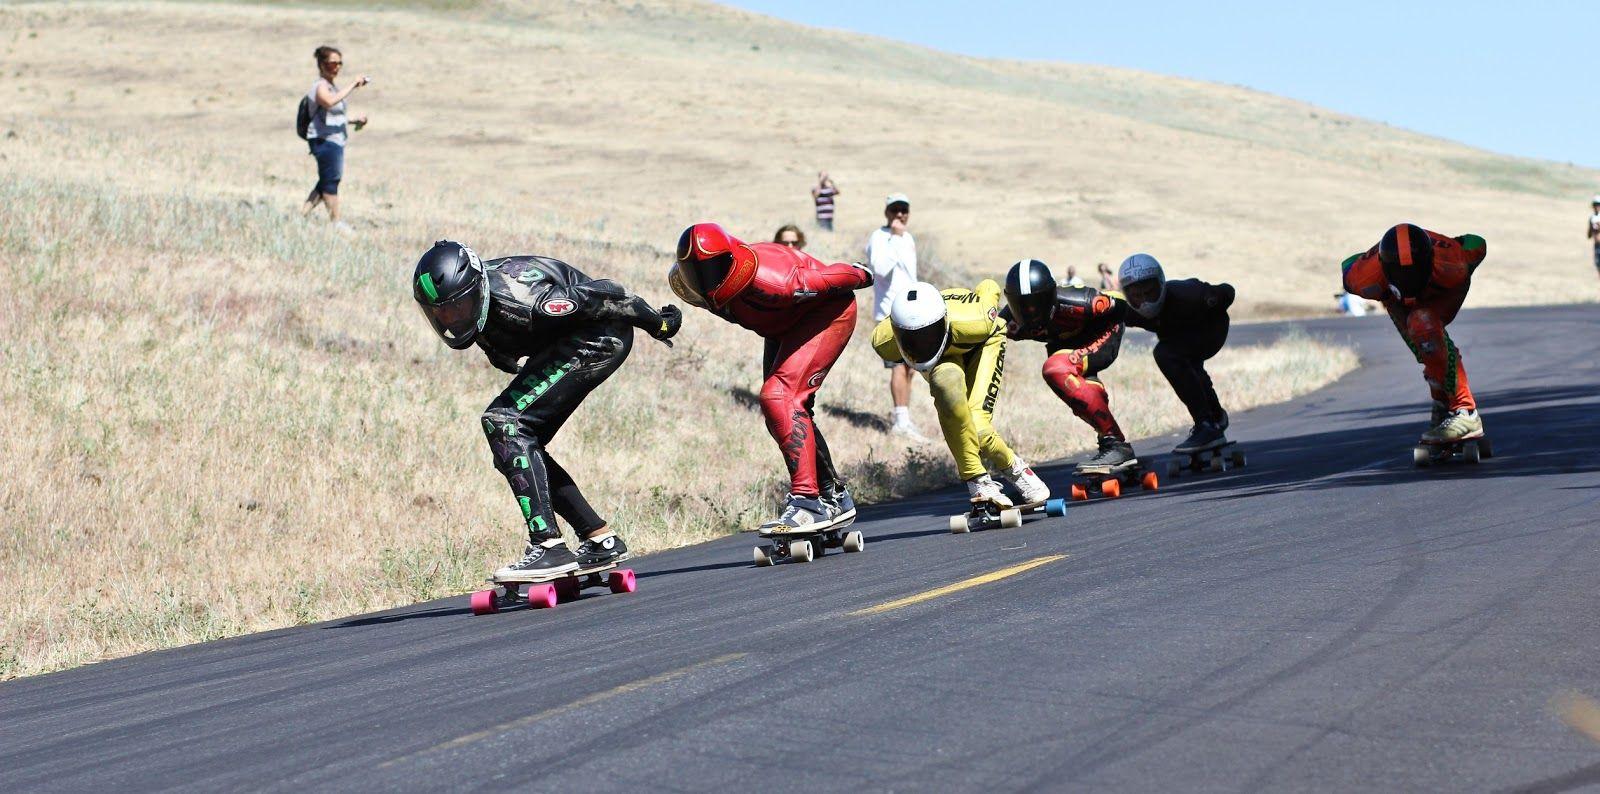 Downhill Longboarding–insane speeds on longboards